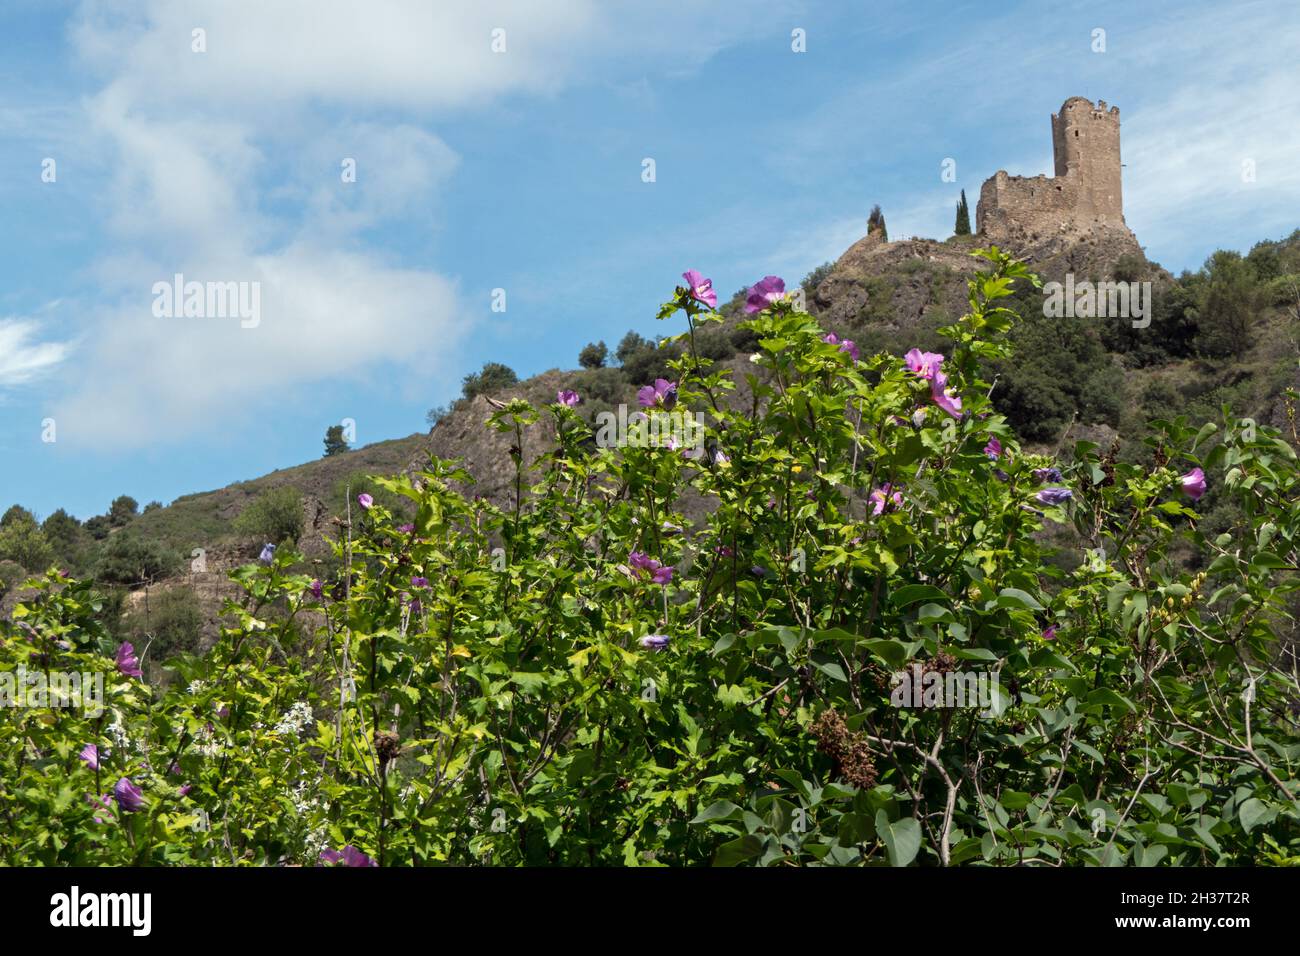 Vista di Lastours in Francia, caratteristico antico borgo francese con rovine di castelli catari medievali sulle colline Foto Stock